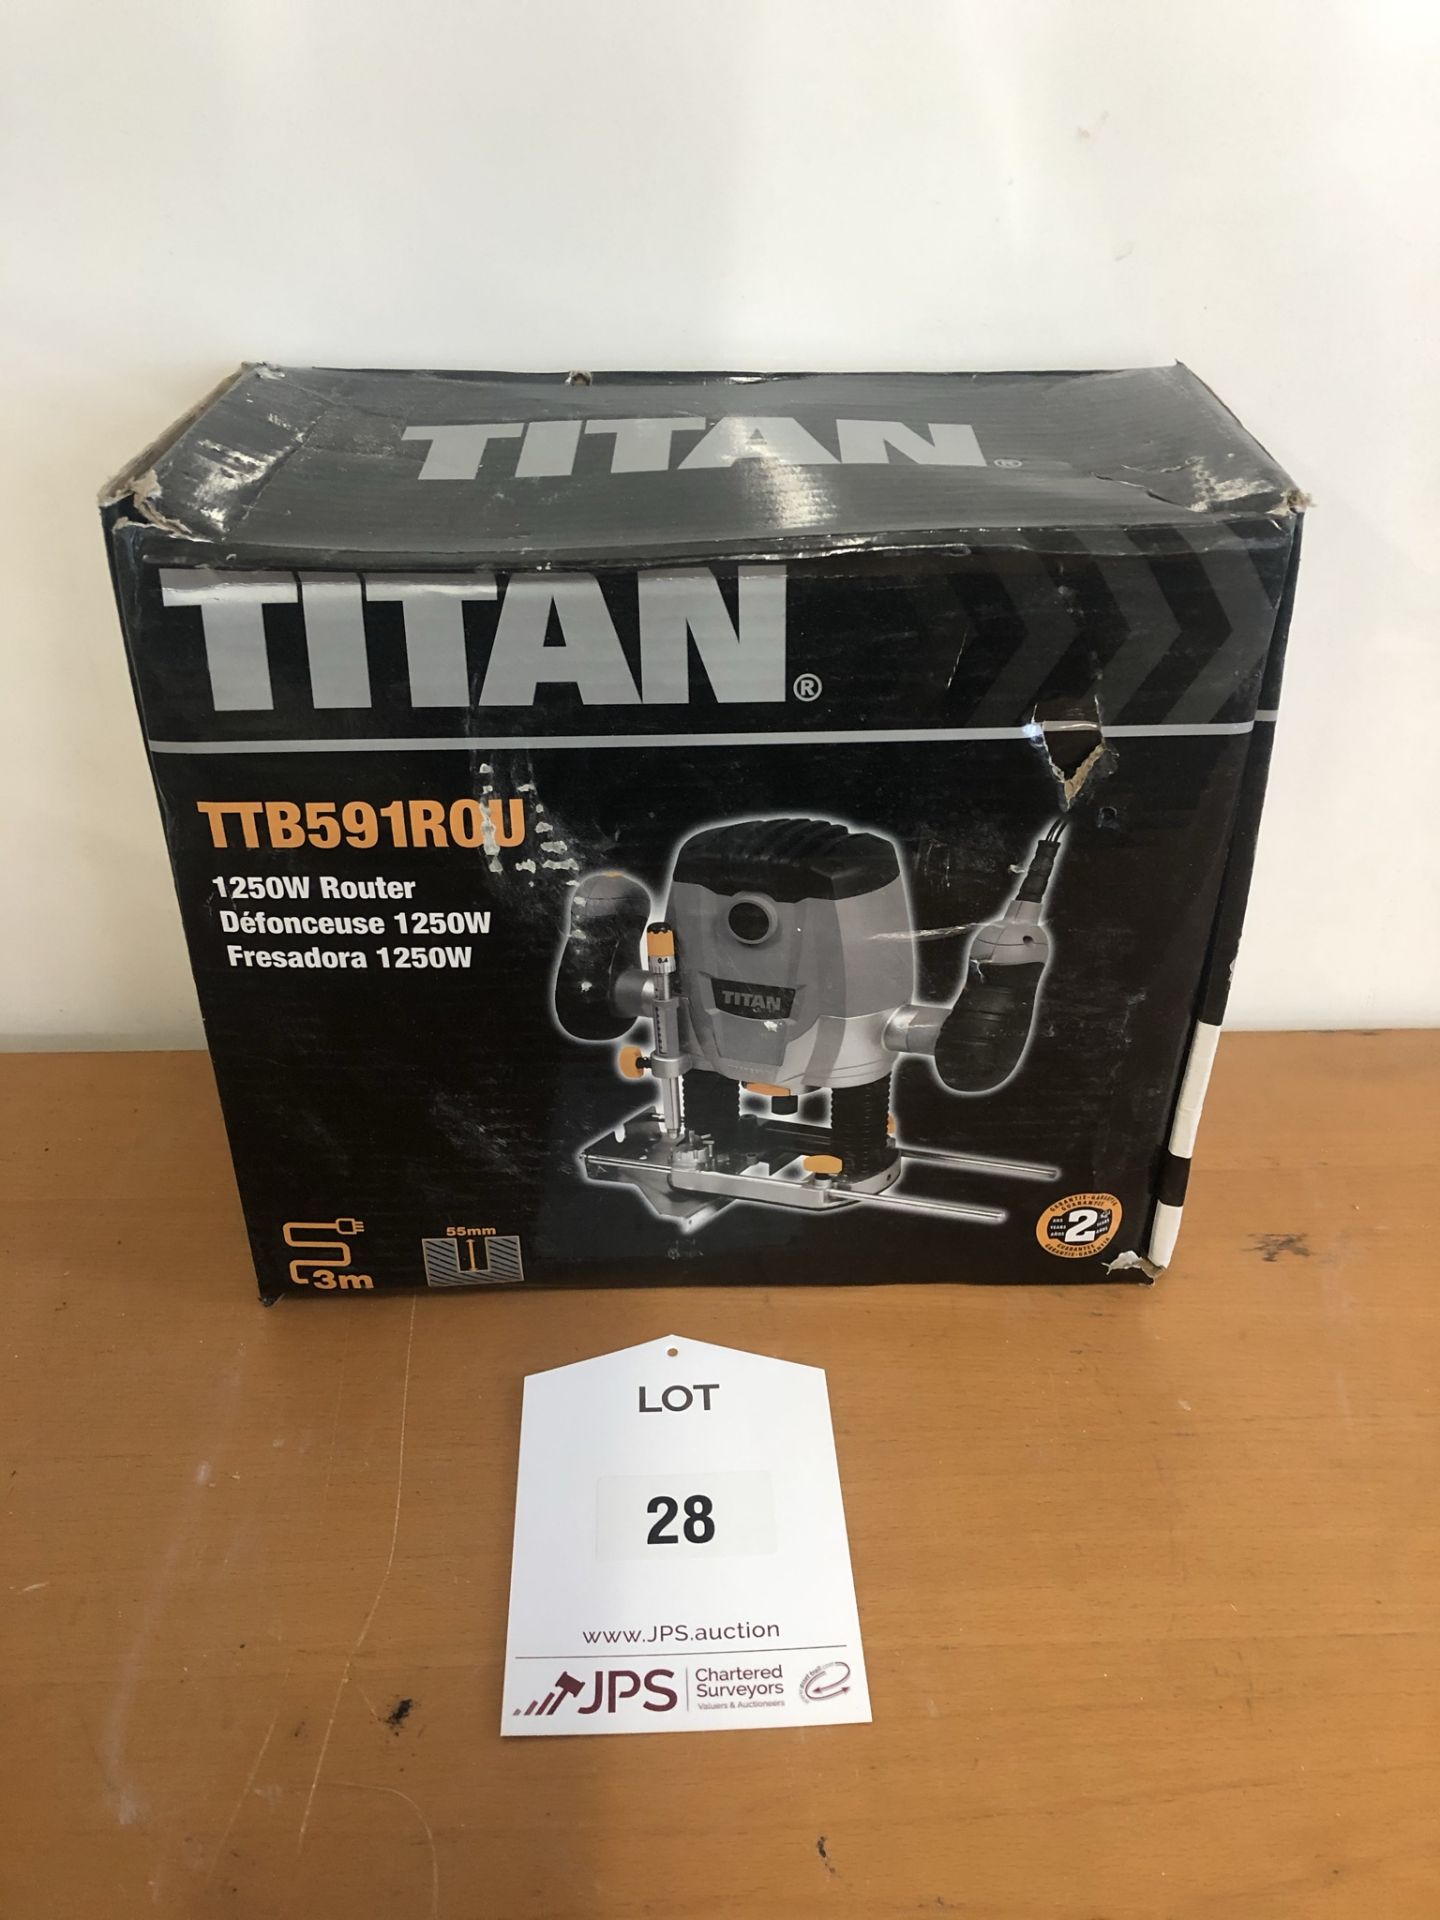 Titan TTB591ROU 1250w Router